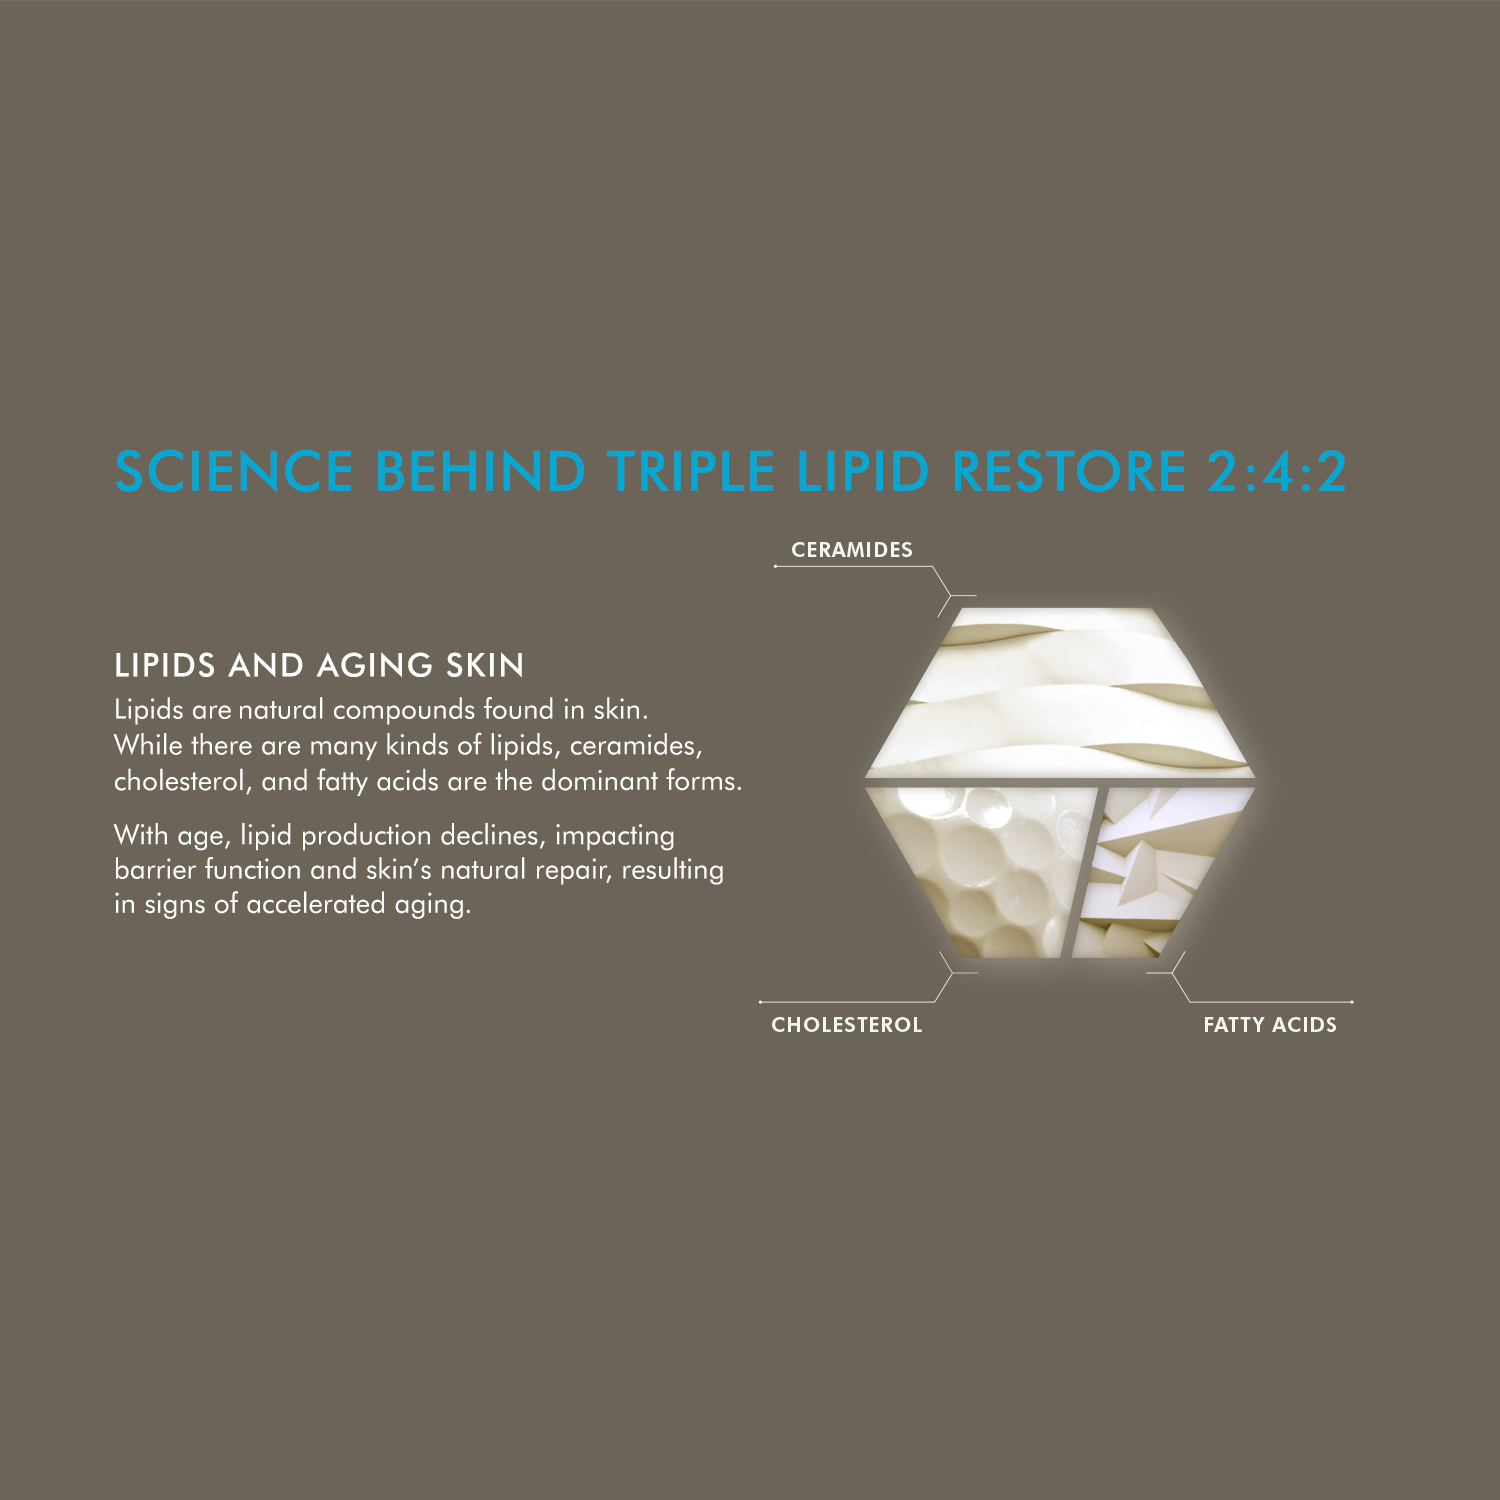 skinceuticals triple lipid restore 2:4:2